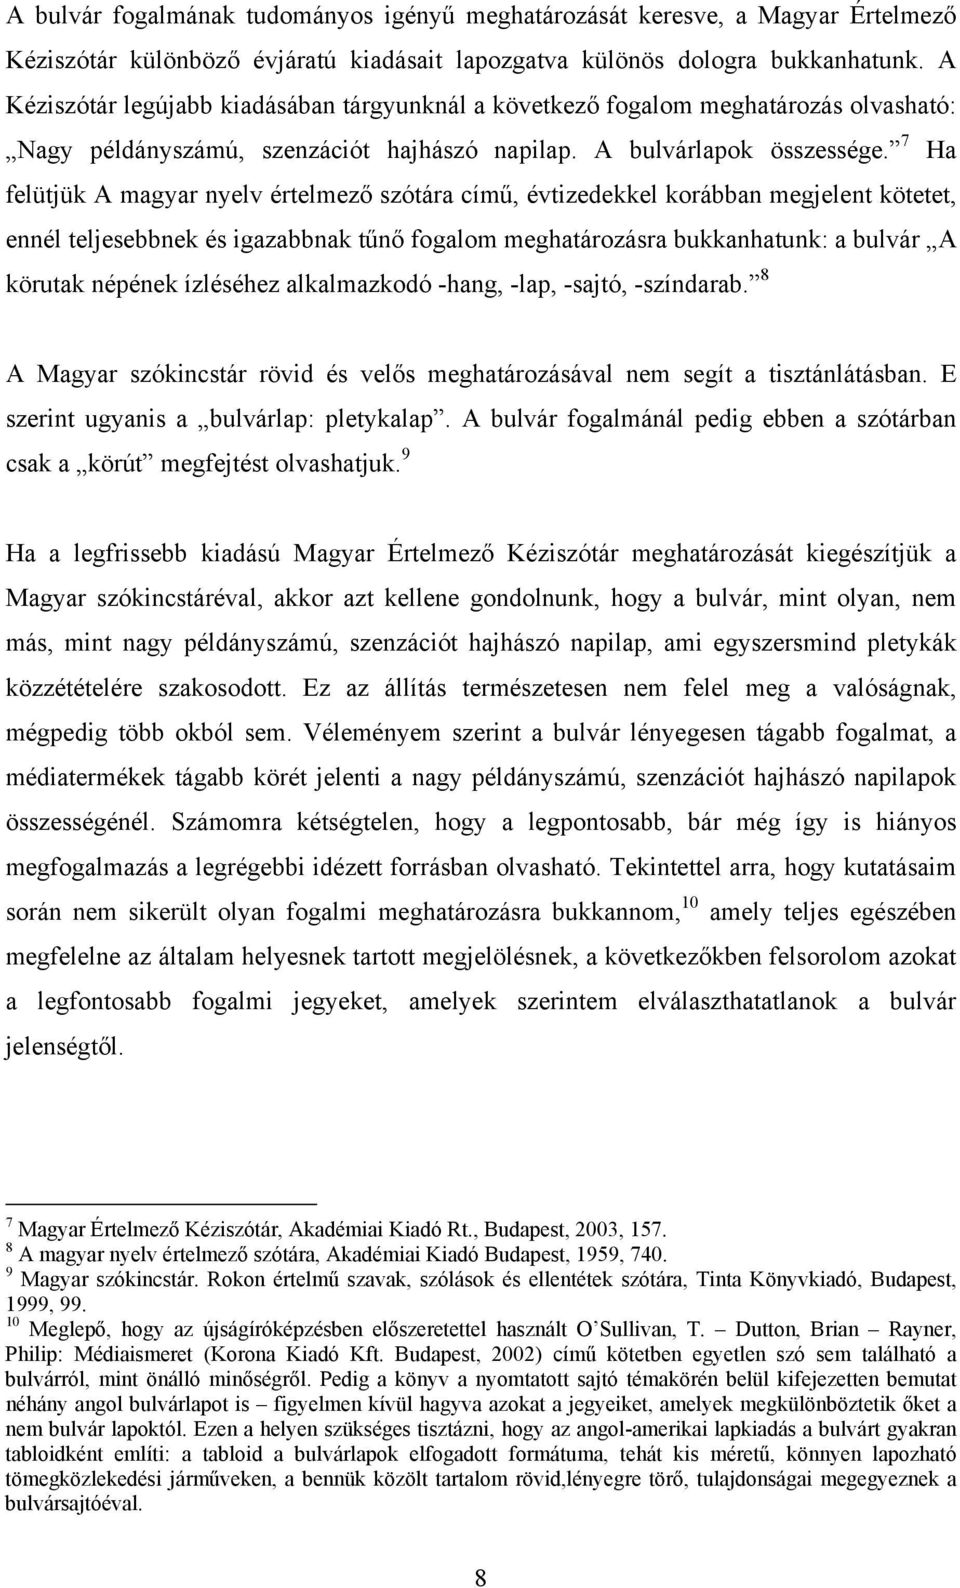 7 Ha felütjük A magyar nyelv értelmező szótára című, évtizedekkel korábban megjelent kötetet, ennél teljesebbnek és igazabbnak tűnő fogalom meghatározásra bukkanhatunk: a bulvár A körutak népének